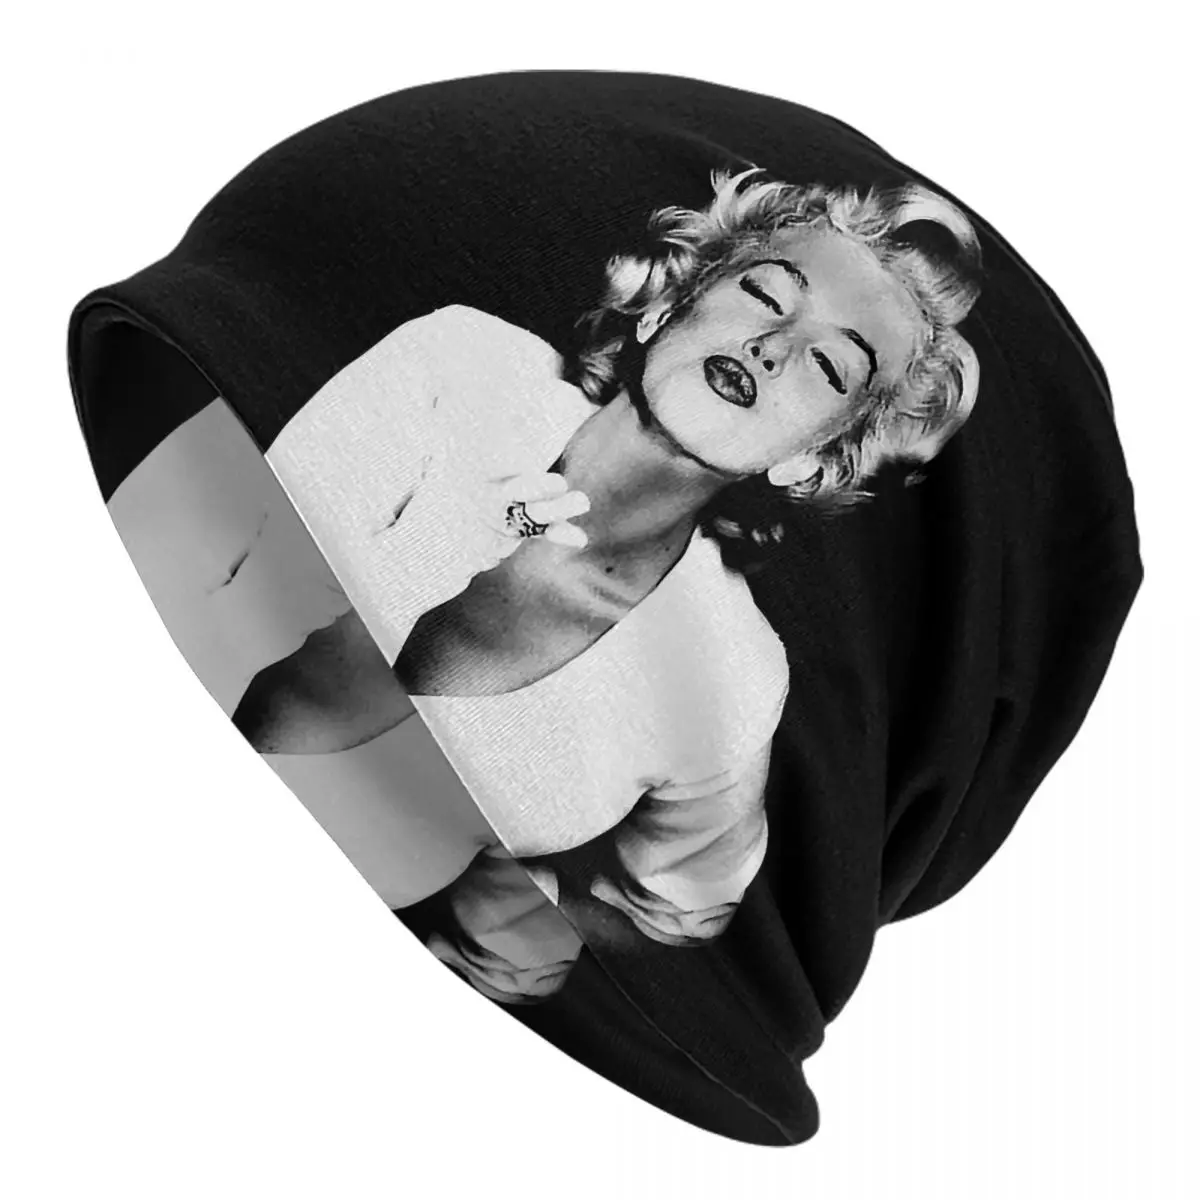 Marilyn Monroe Adult Men's Women's Knit Hat Keep warm winter Funny knitted hat